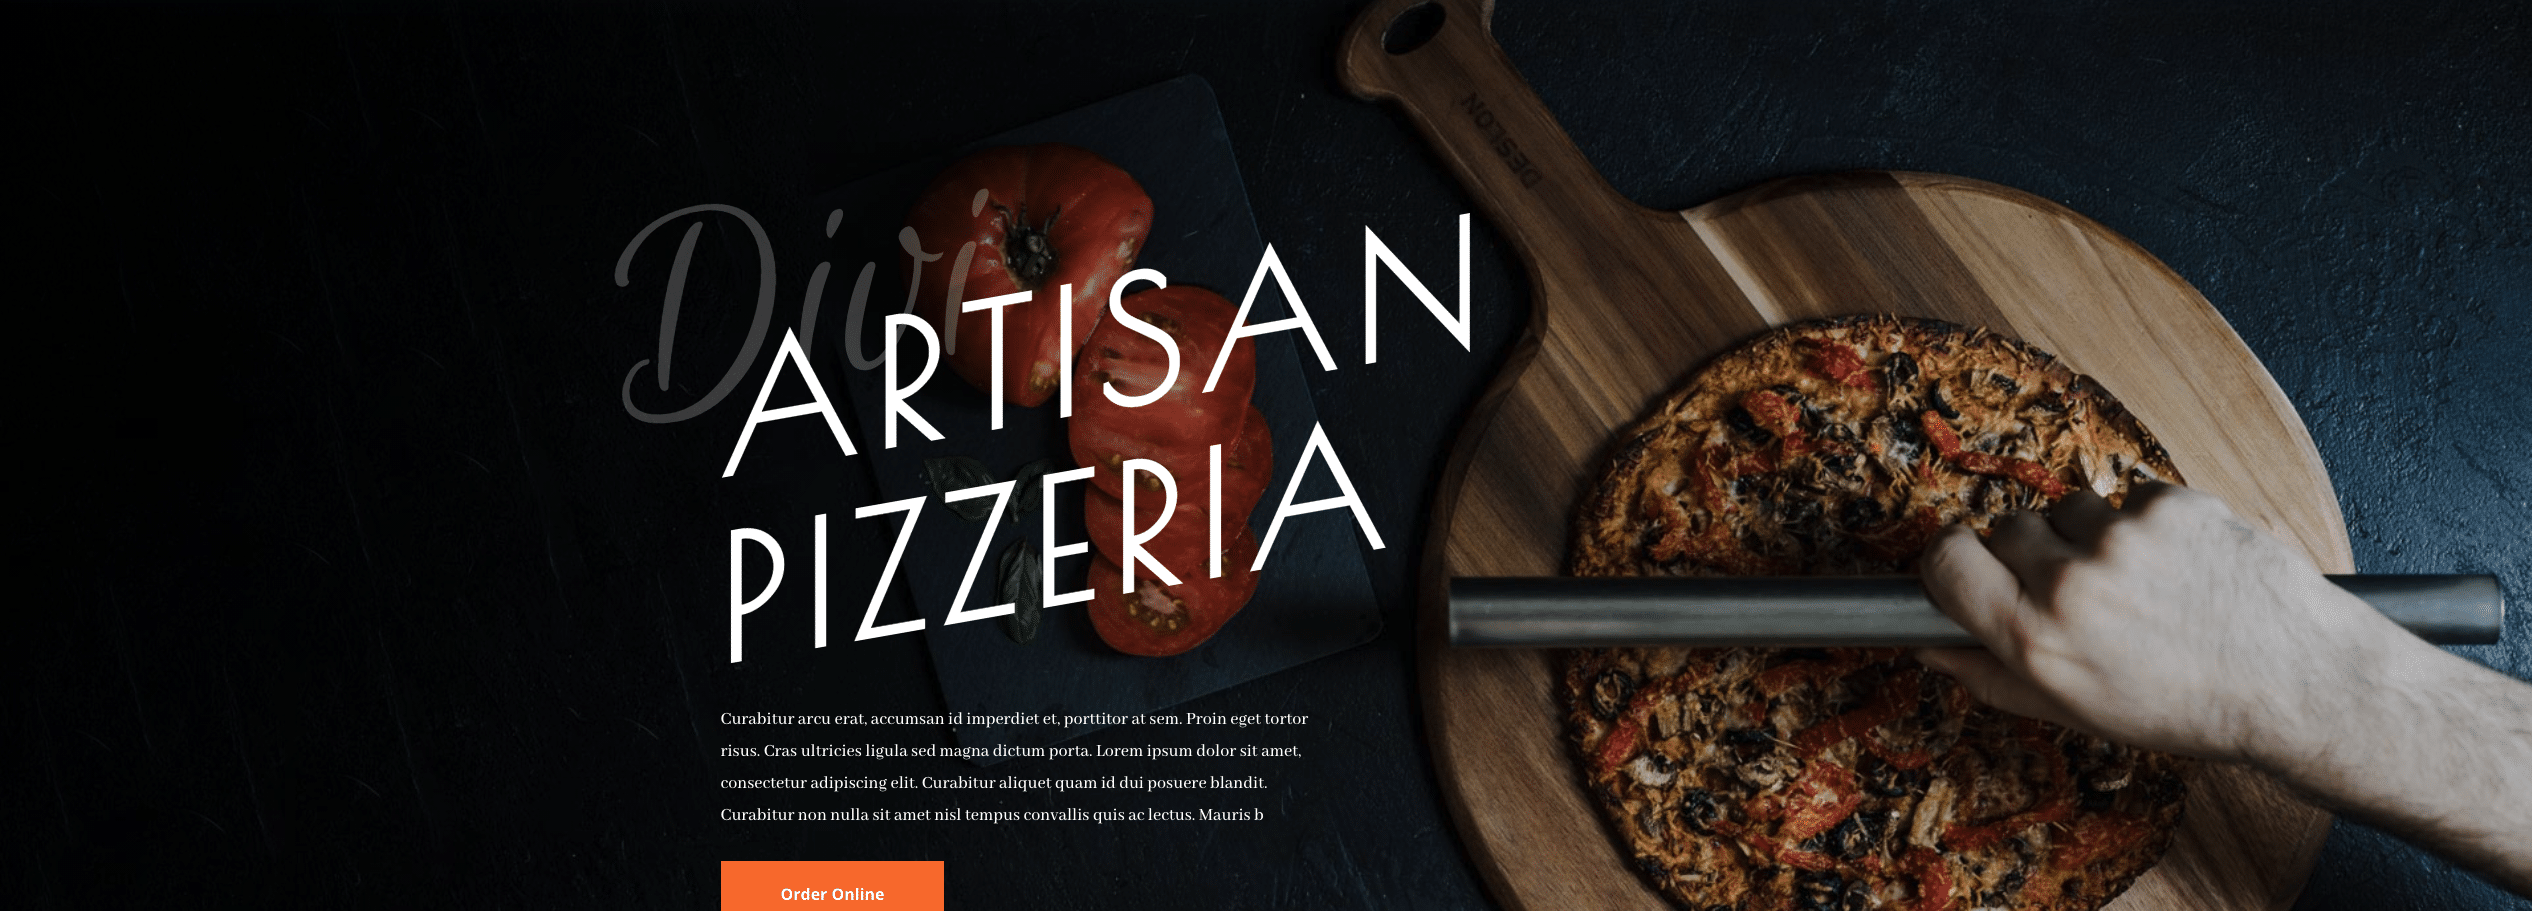 Pizzeria Website Design